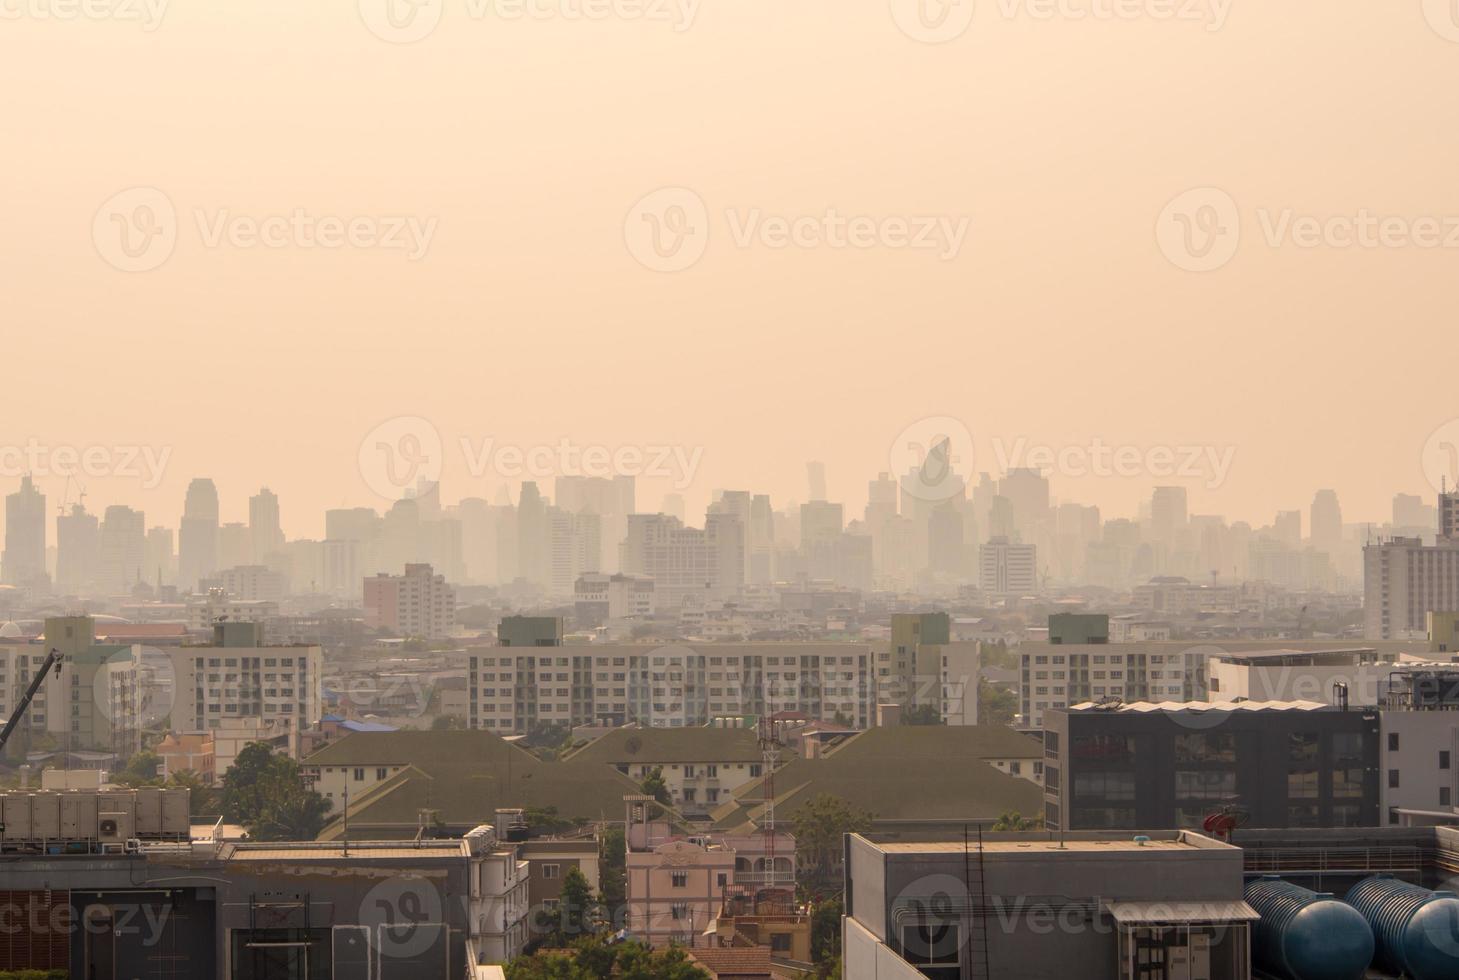 skyline urbano del centro di Bangkok nella nebbia o nello smog. città di bangkok nella luce soffusa foto